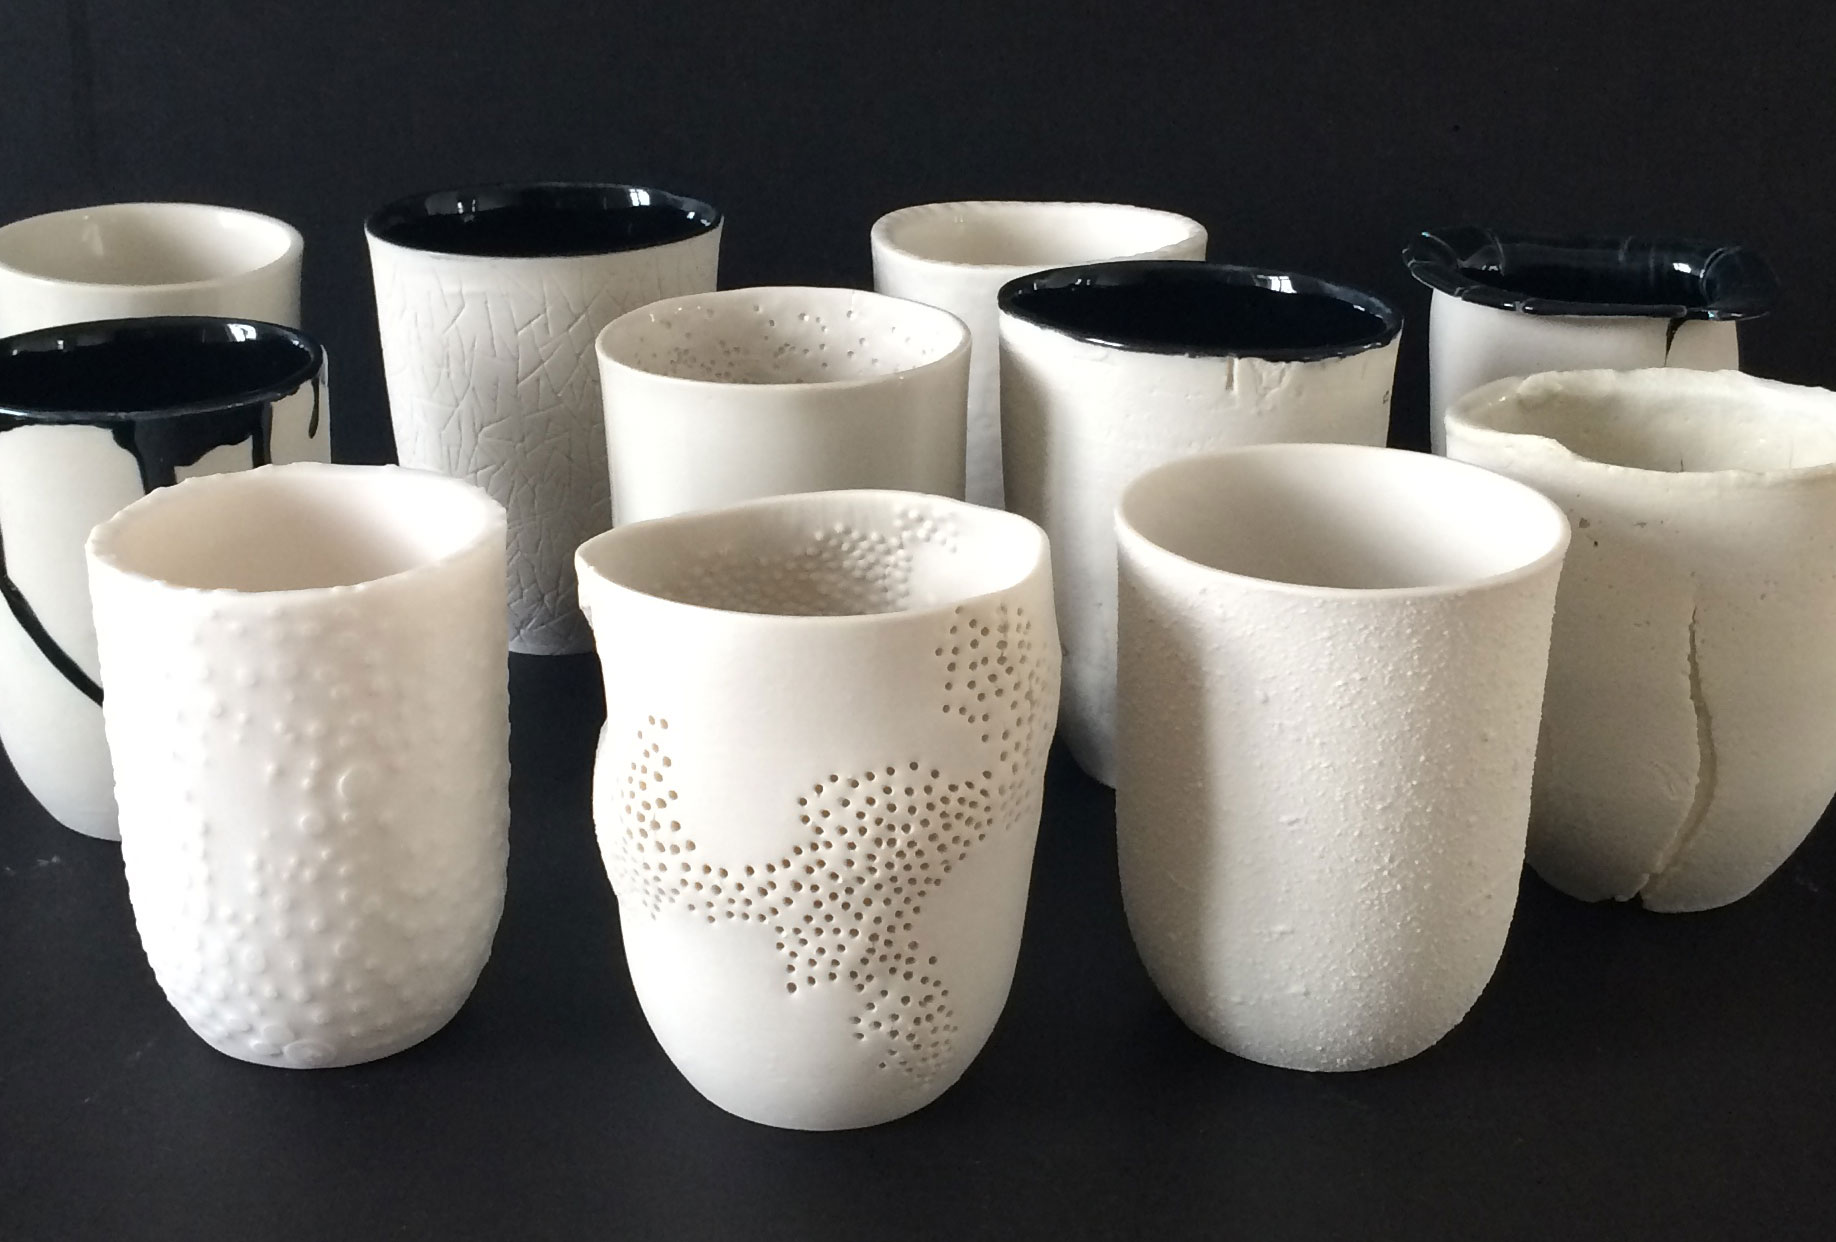 Porcelain Evolution Lab – BA design project, UdK, Berlin